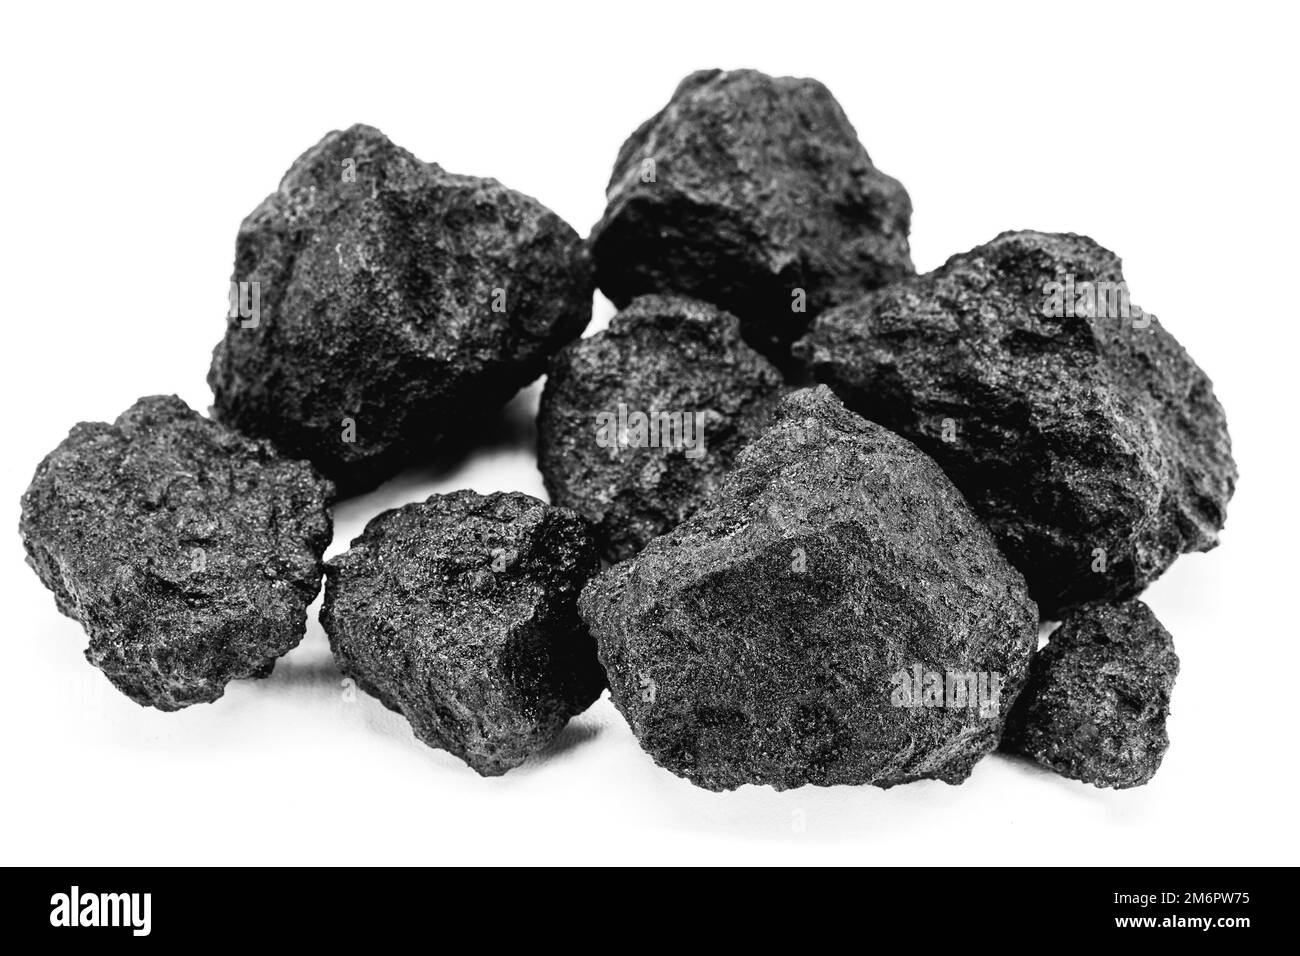 Le coke de pétrole est un produit solide granulé carboné issu du traitement des fractions liquides de pétrole, riche en carbone qui provient du pétrole Banque D'Images